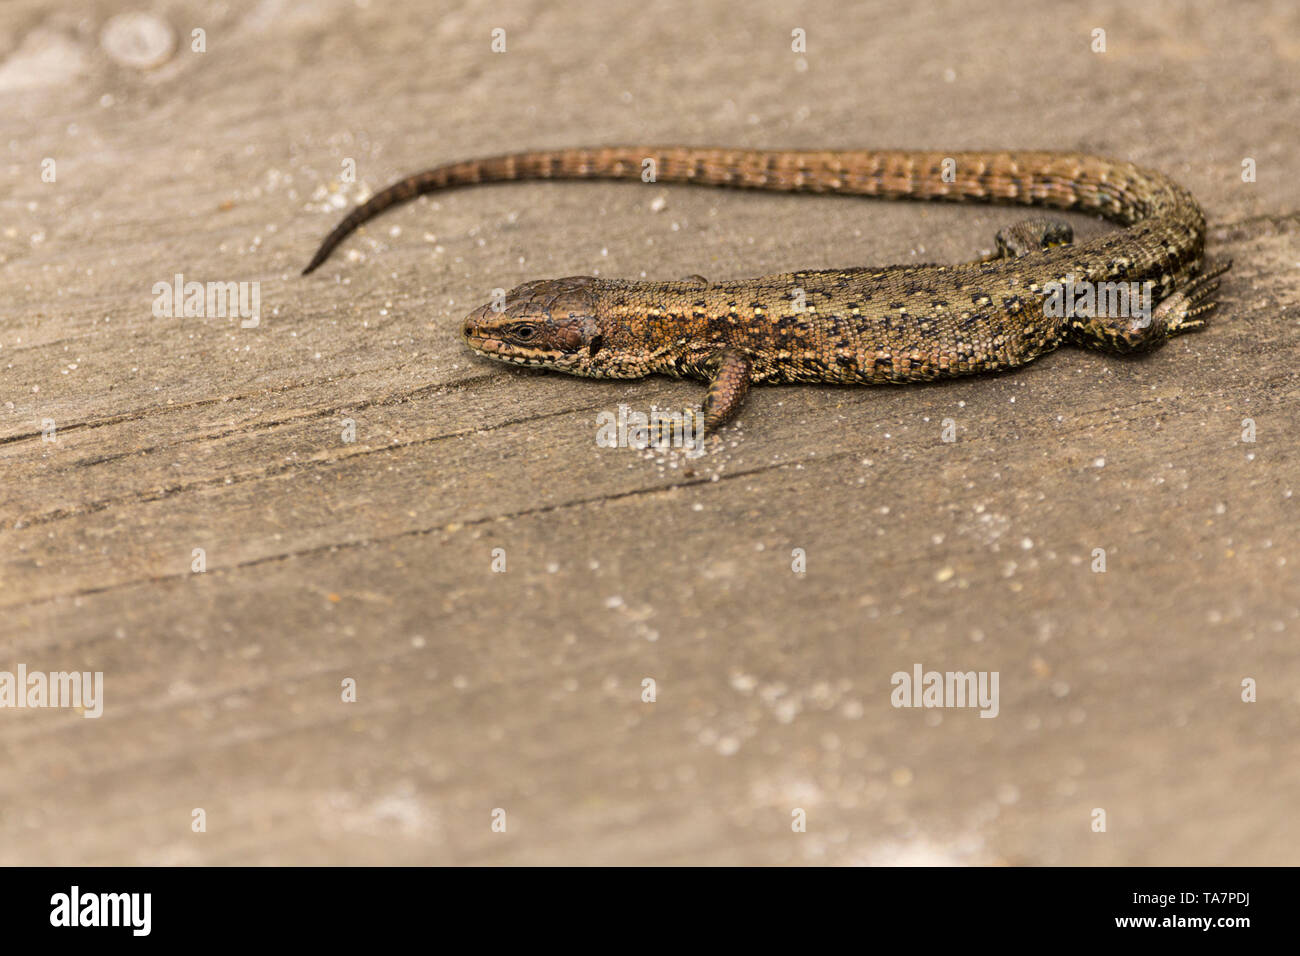 Lizard gemeinsame (Lacerta vivipara) Erwärmung auf einem Board Walk erhitzt durch die Sonne. Grau Braun grünlich mit dunklen Mustern an seinen Körper und langen Schwanz Stockfoto